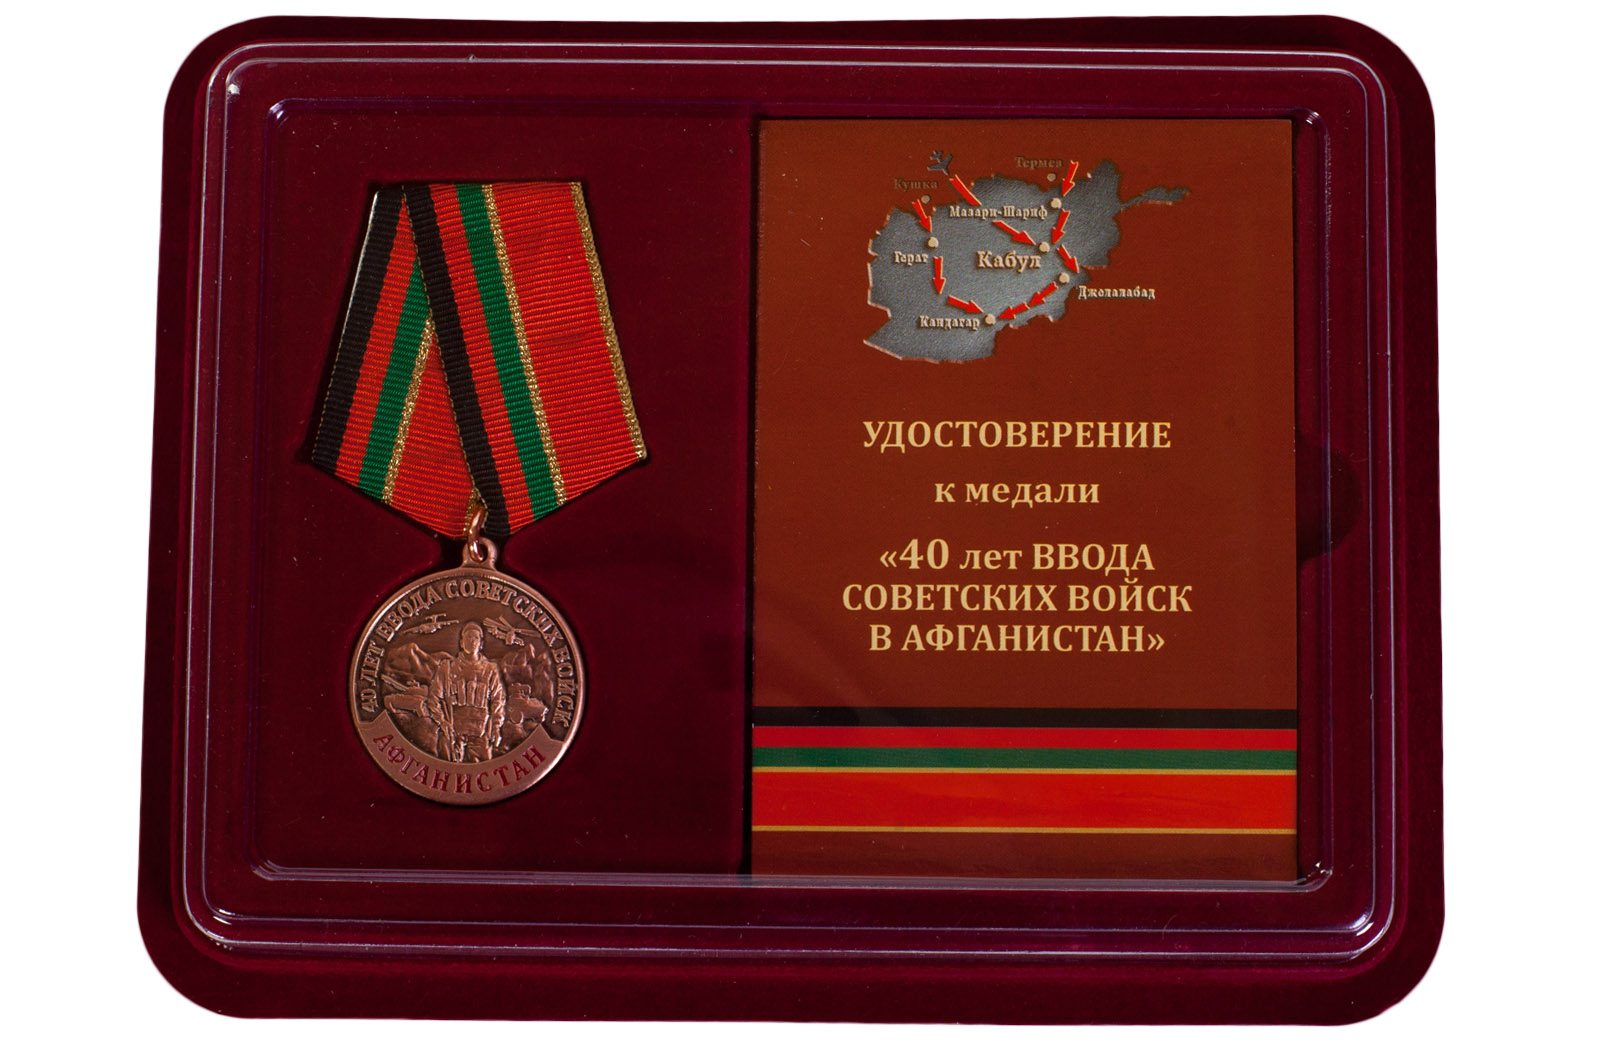 Купить памятную медаль 40 лет ввода Советских войск в Афганистан с доставкой